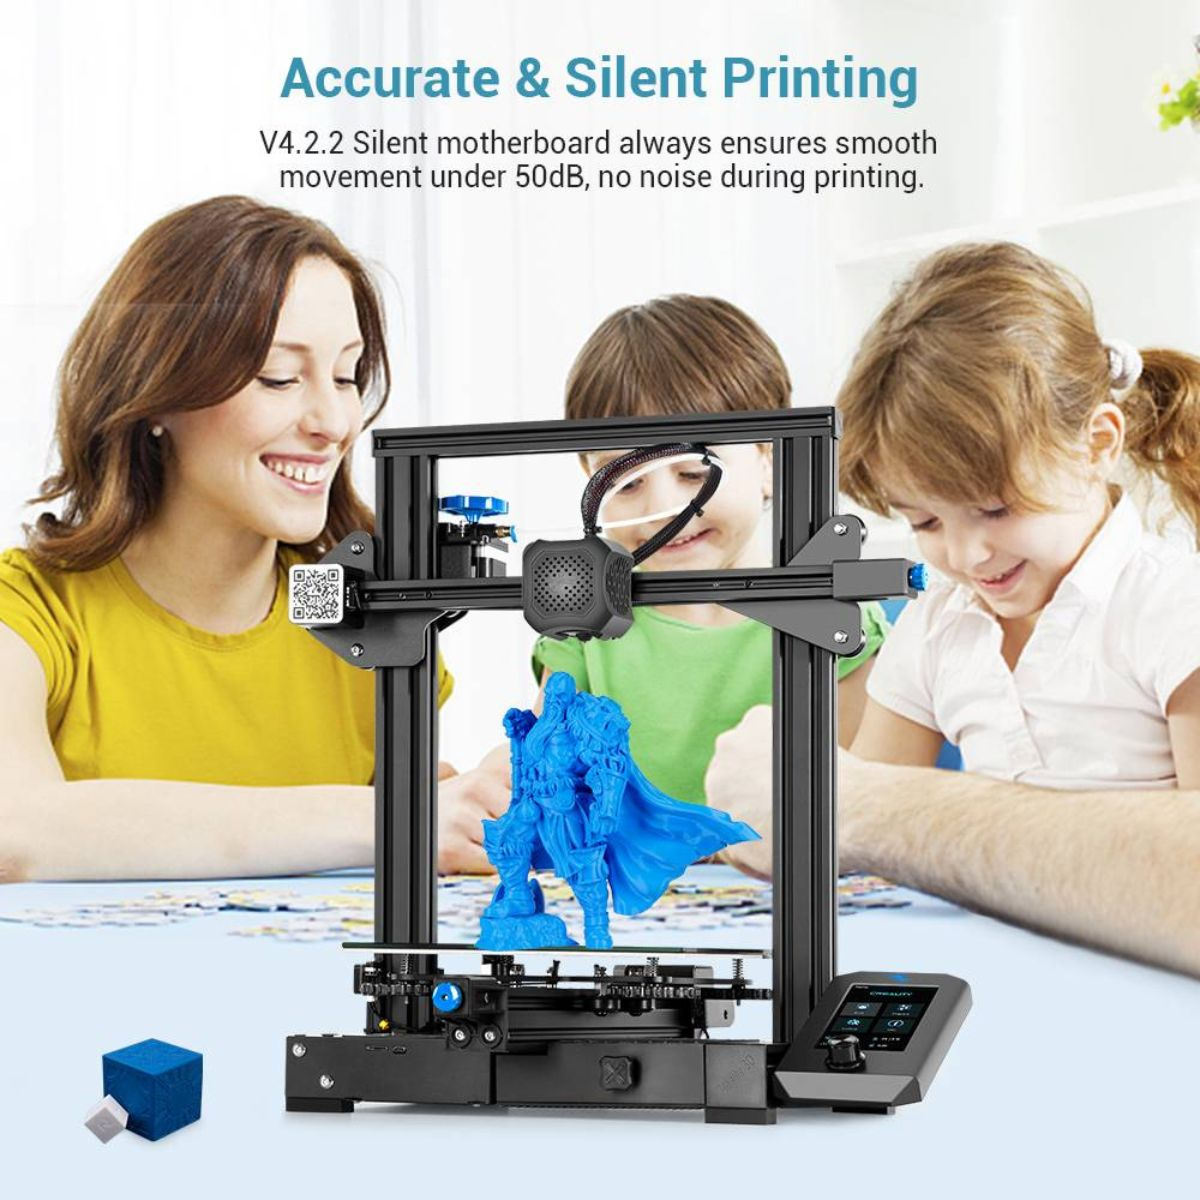 CREALITY Ender 3 Drucker 3D 3D FDM V2 Printer